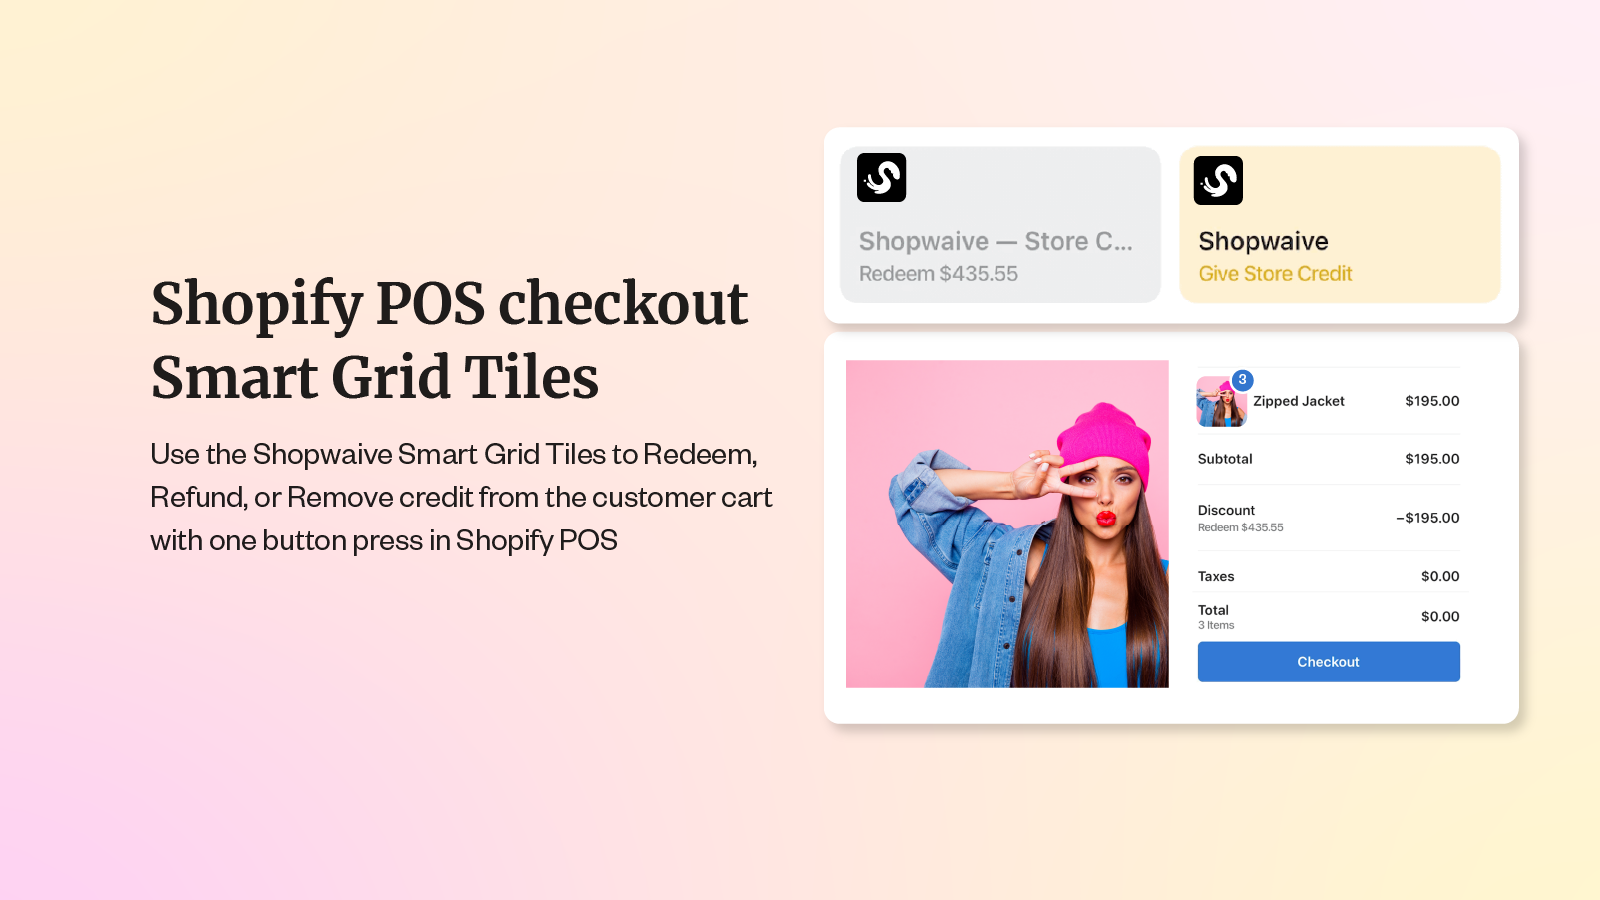 Shopify POS pour émettre du crédit en magasin et des remboursements